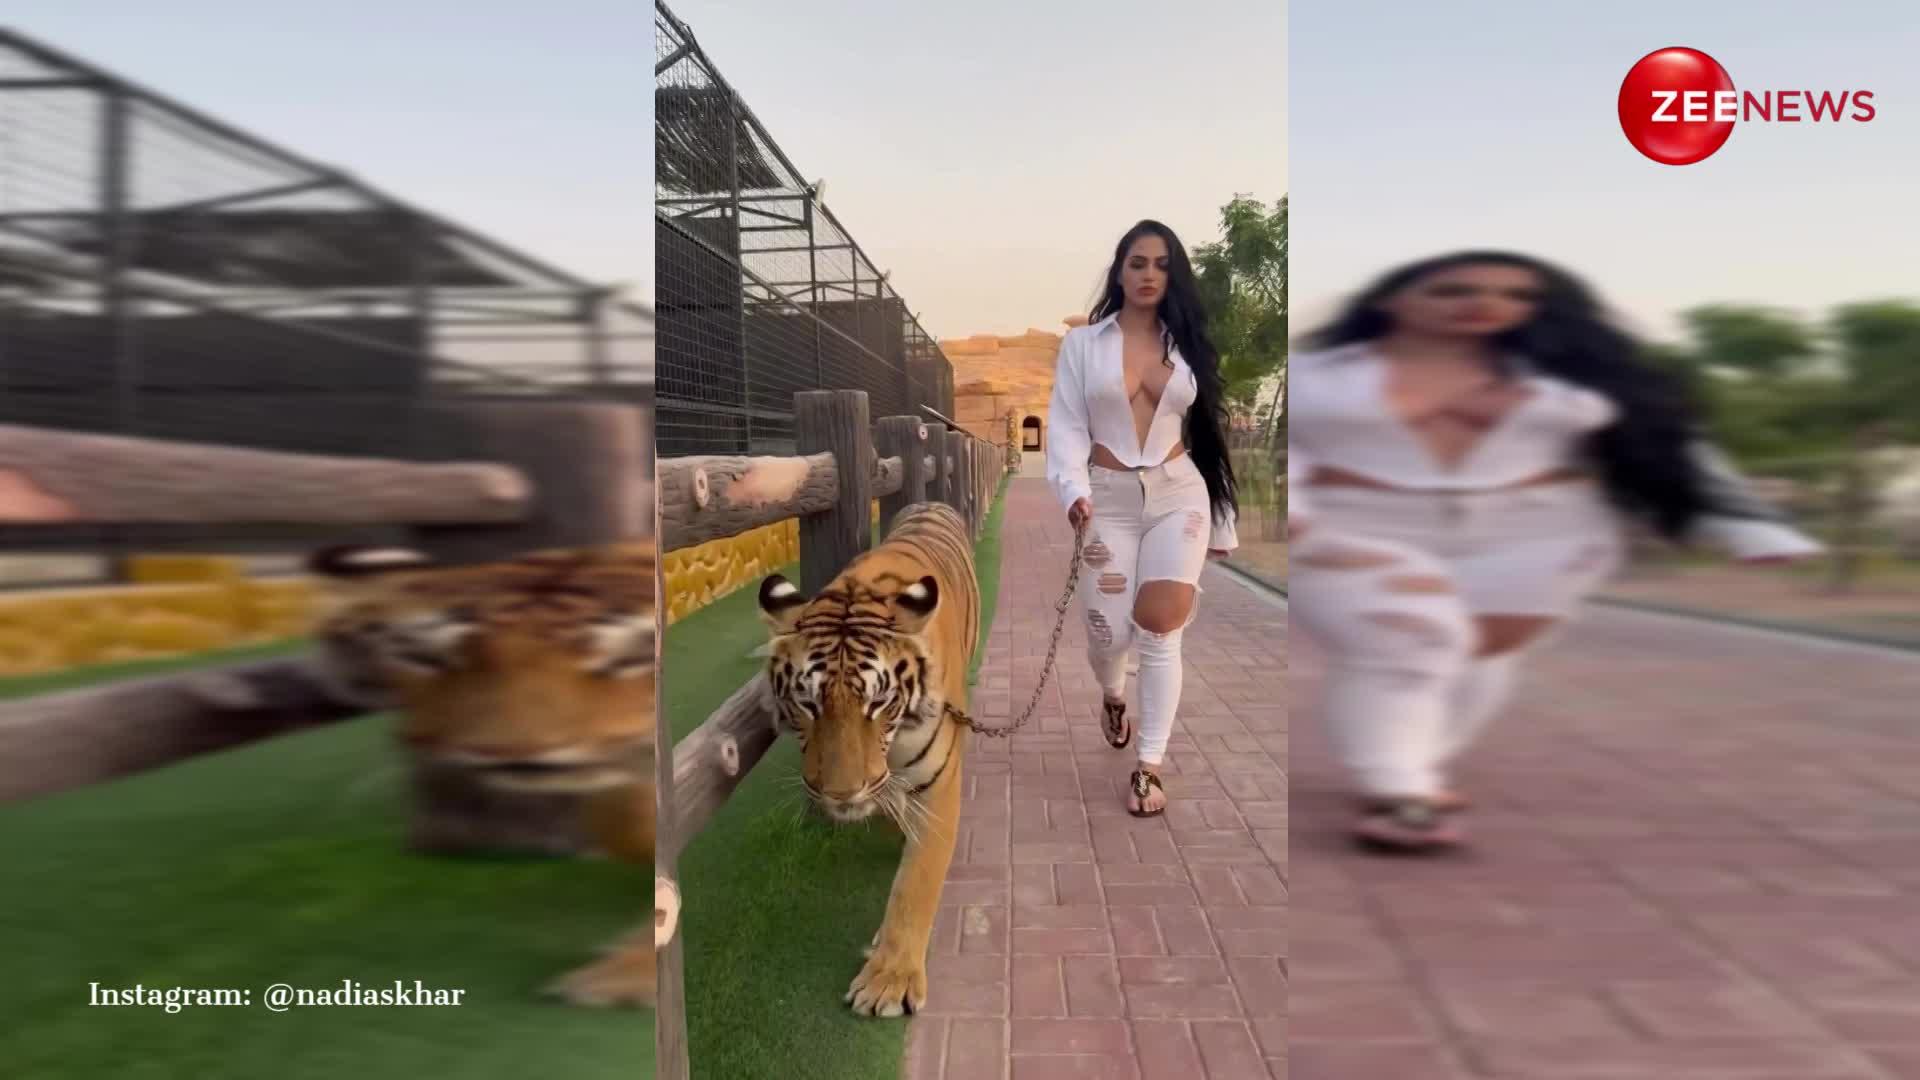 पालतू टाइगर को गार्डन में घूमाते दिखीं Dubai की इंफ्लूएंसर, VIDEO ने उड़ा दी रातों की नींद